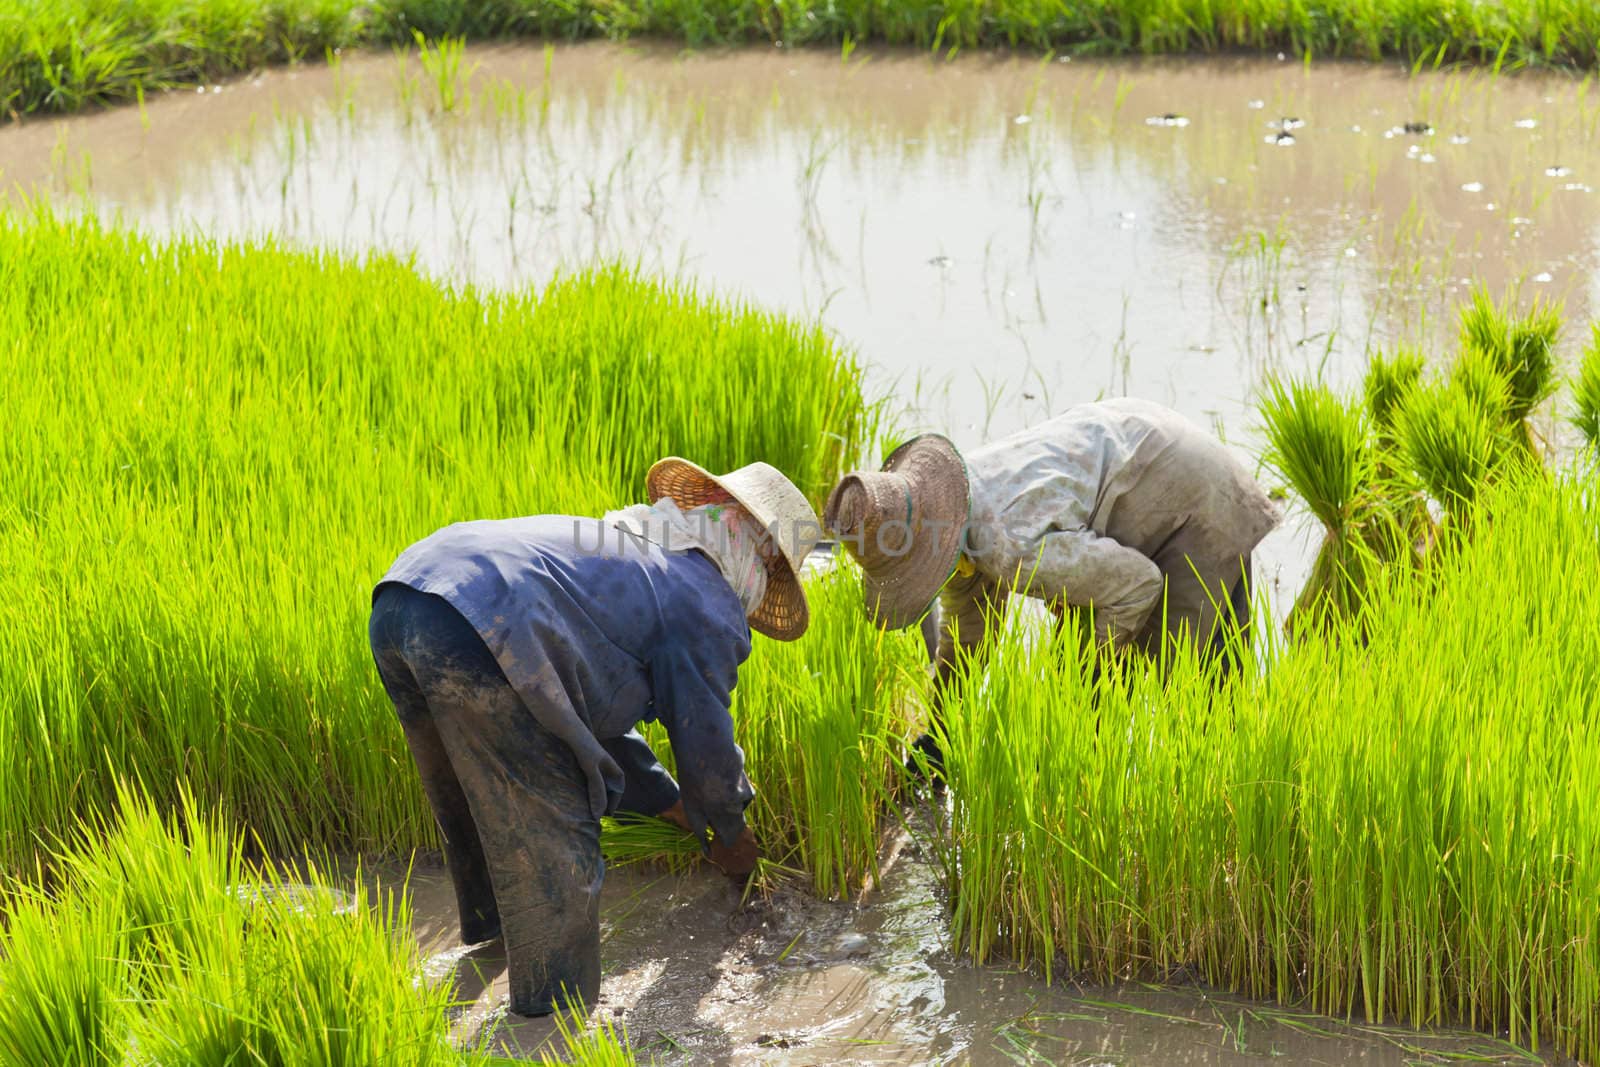 Farmer in rice field, Thailand by FrameAngel